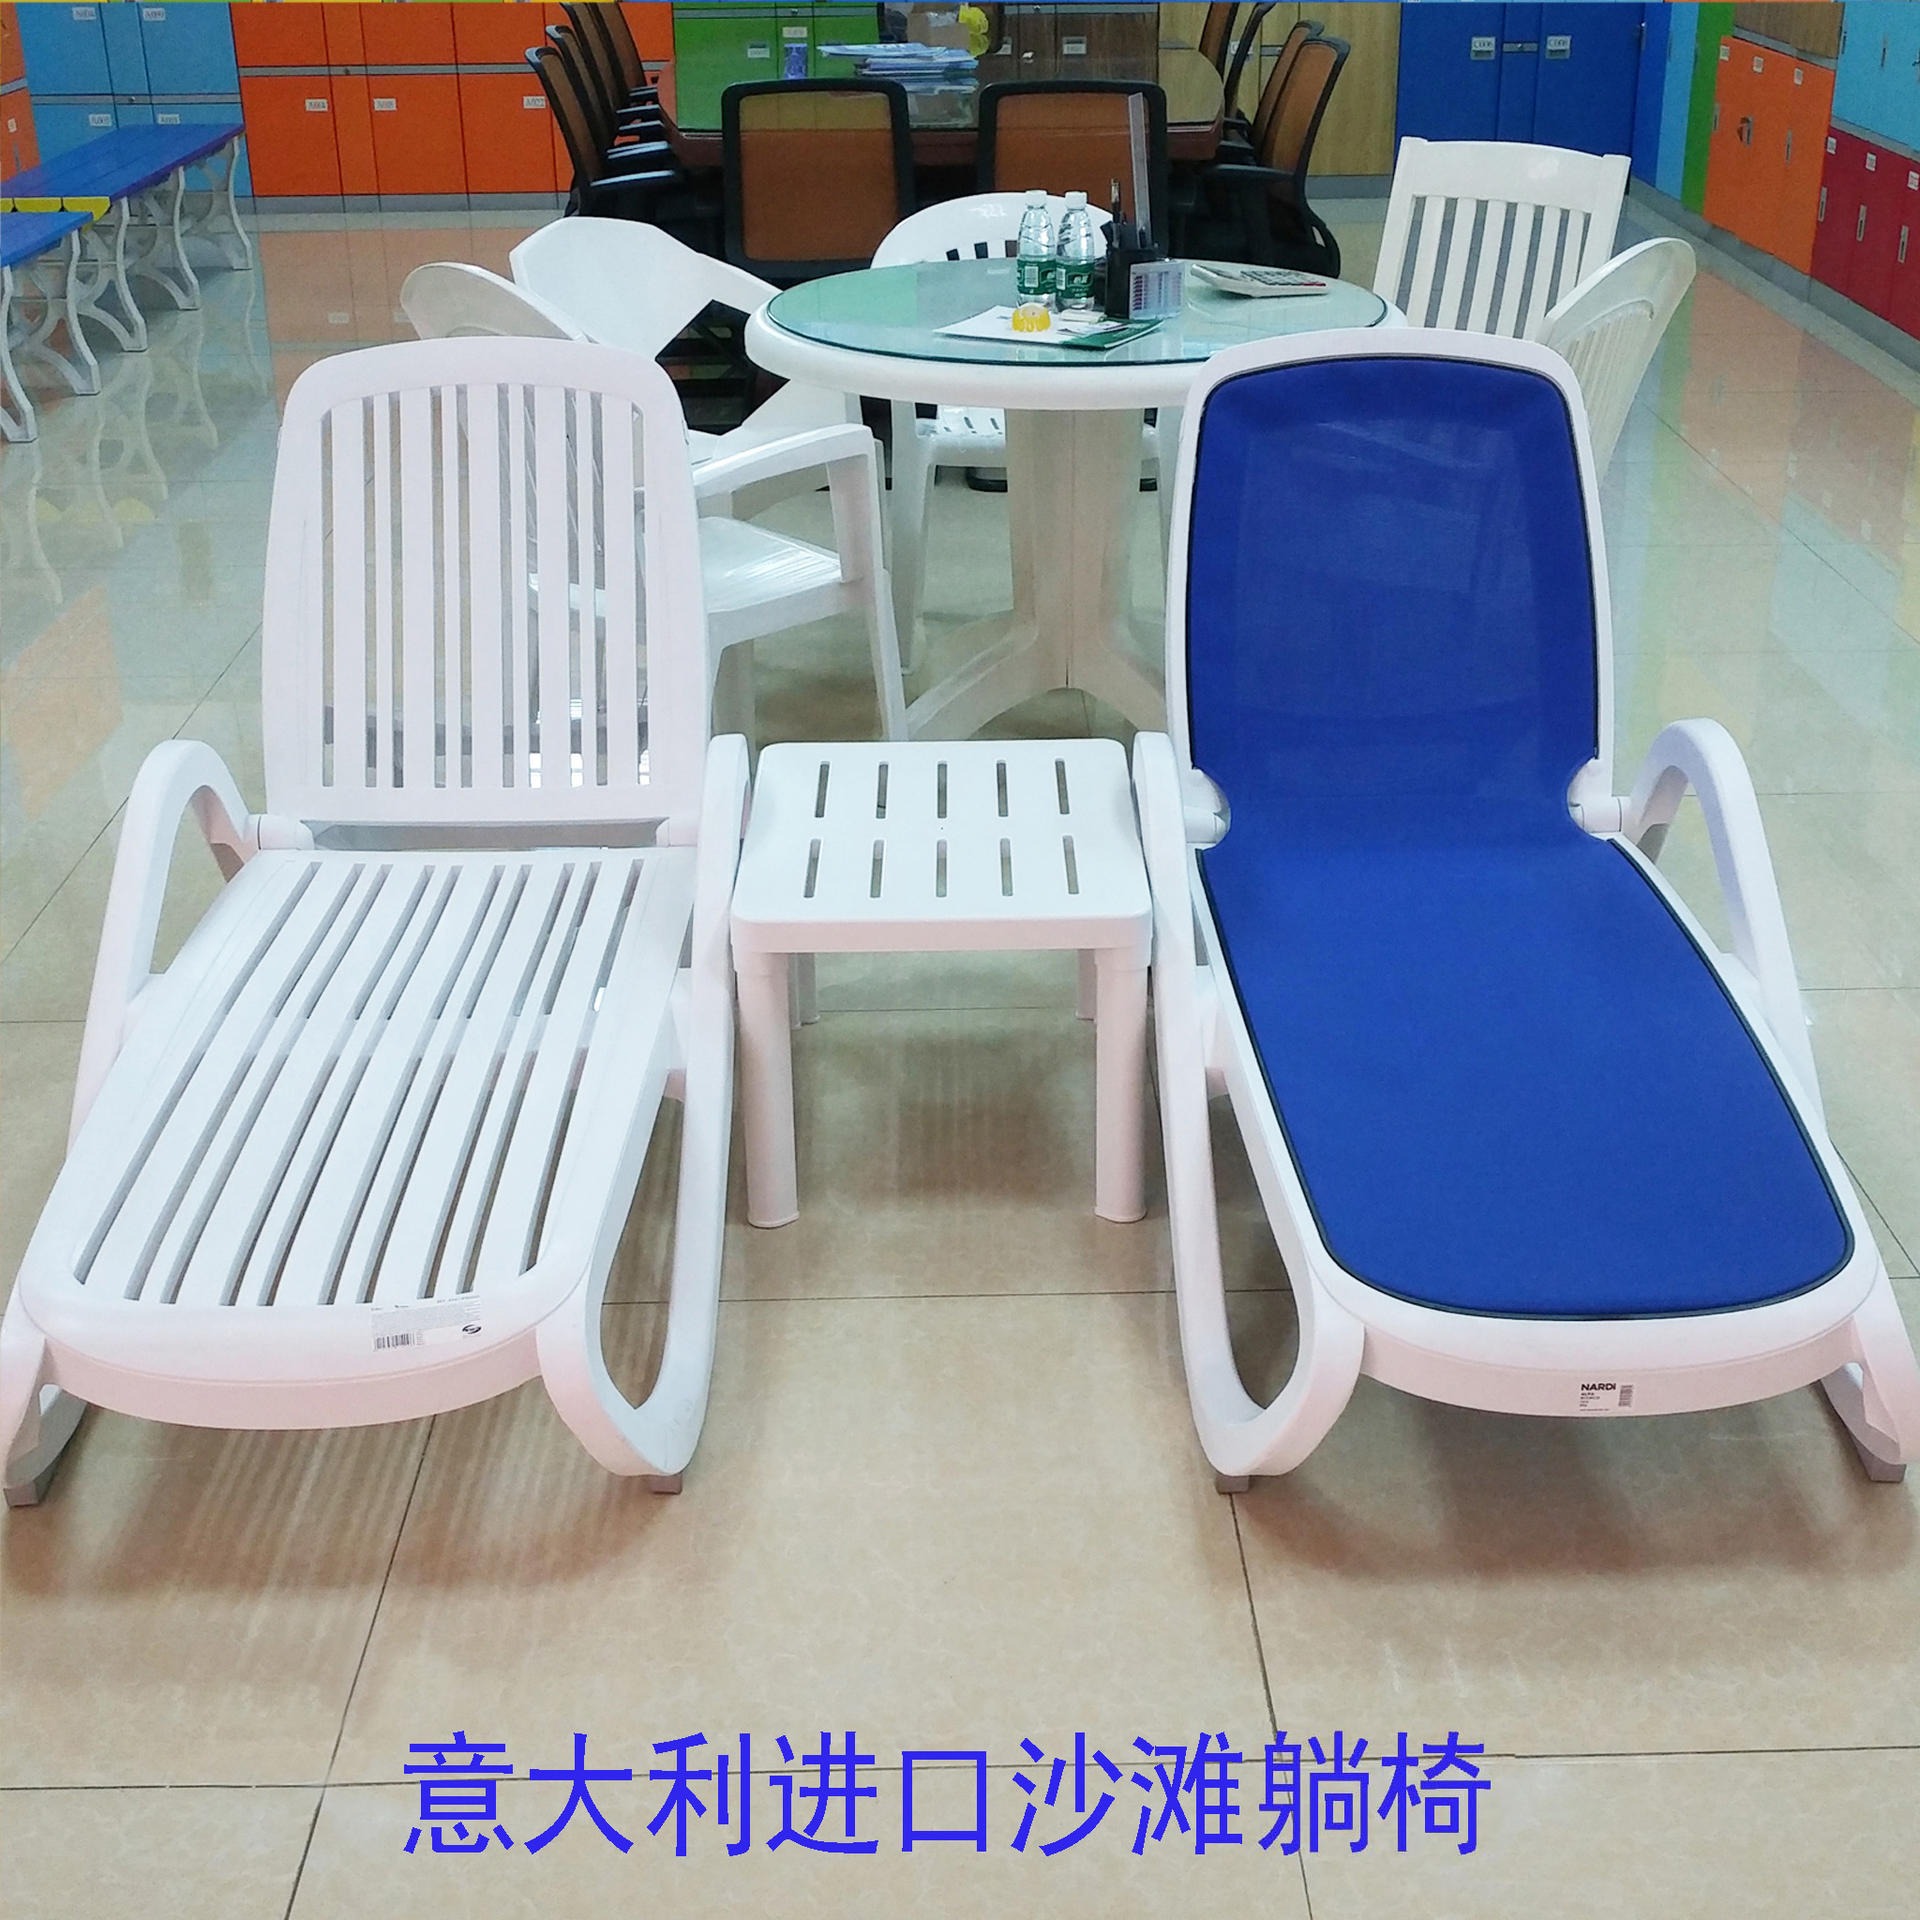 意大利进口ABS塑料沙滩椅 温泉沙滩躺椅 创意塑料沙滩躺椅厂家批发